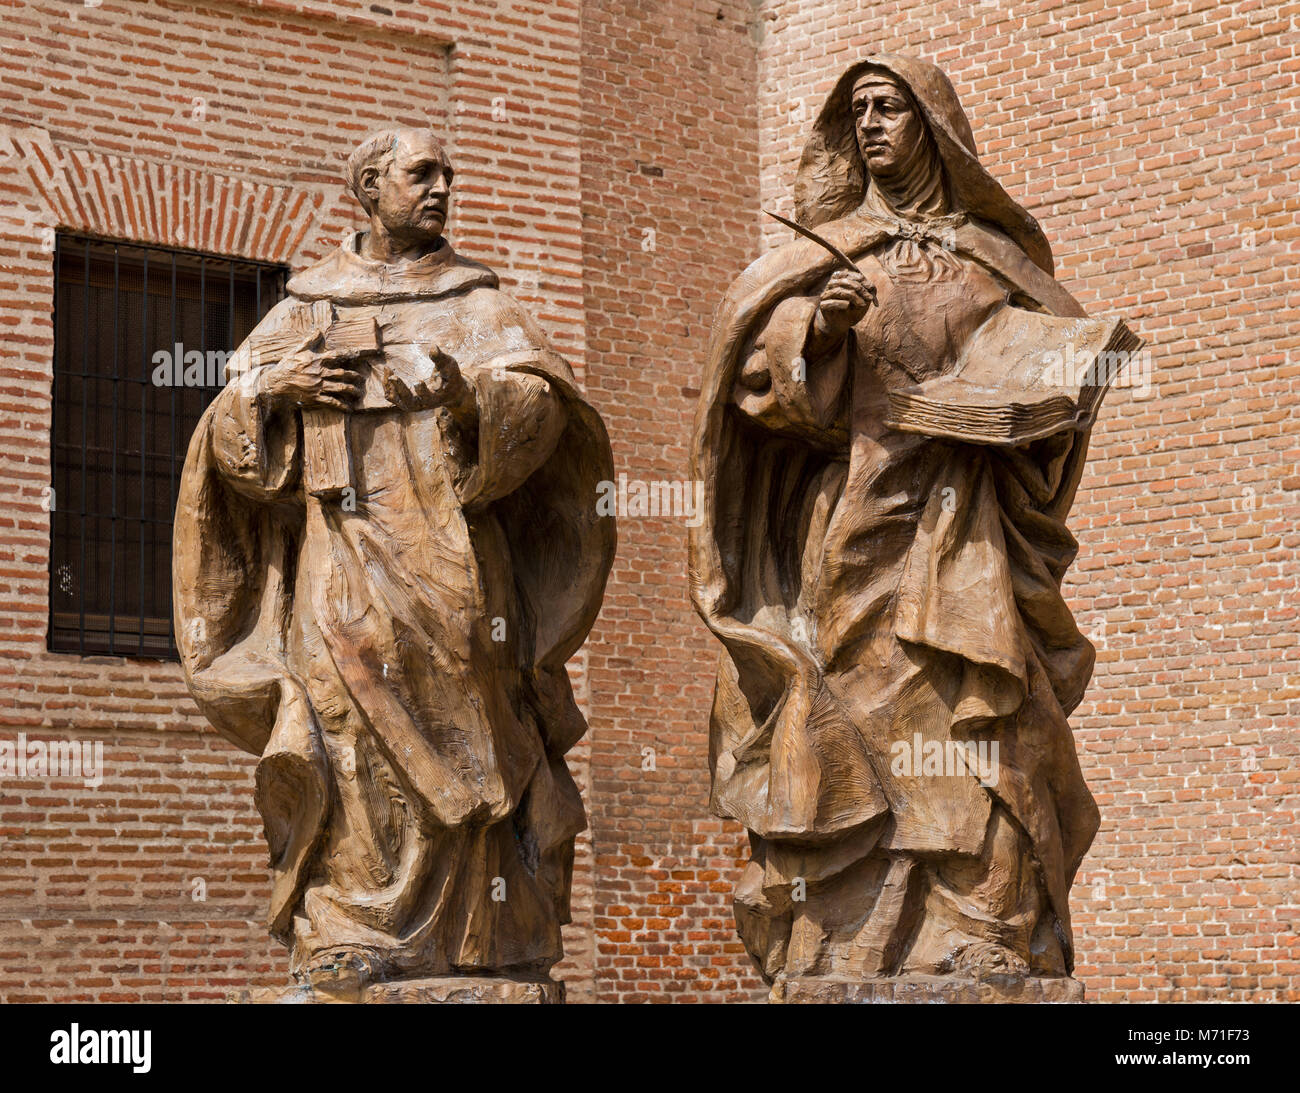 Statue auf der Plaza de San Juan de la Cruz zum Gedenken an die erste Sitzung der Heiligen Teresa von Jesus (auch als die heilige Theresa von Avila bekannt) und der hl. Johannes von t Stockfoto